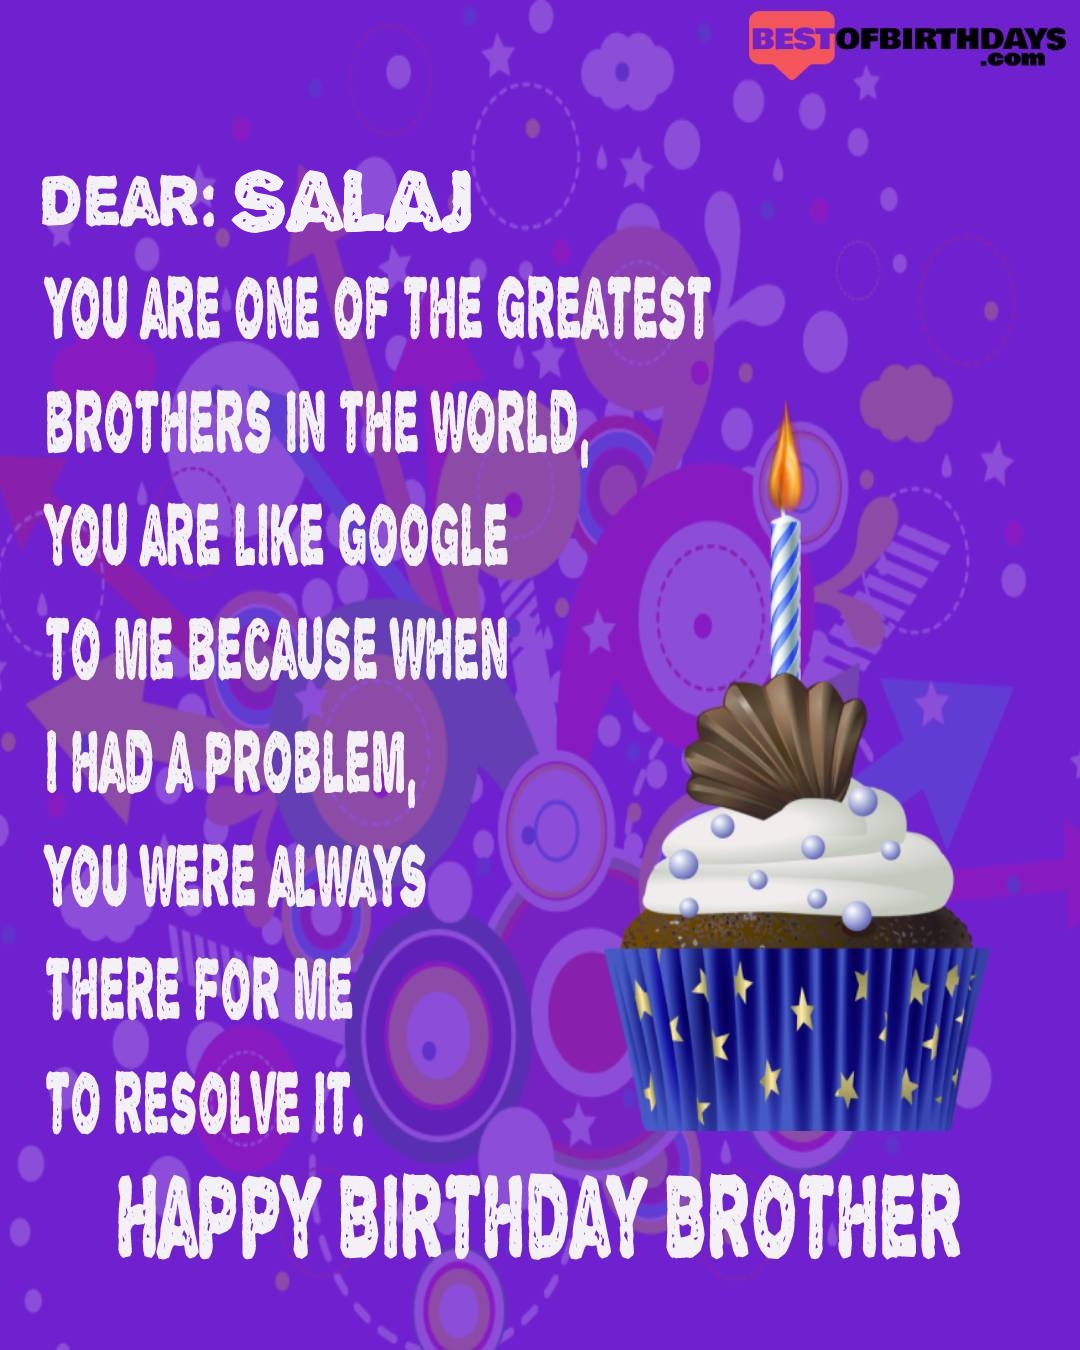 Happy birthday salaj bhai brother bro